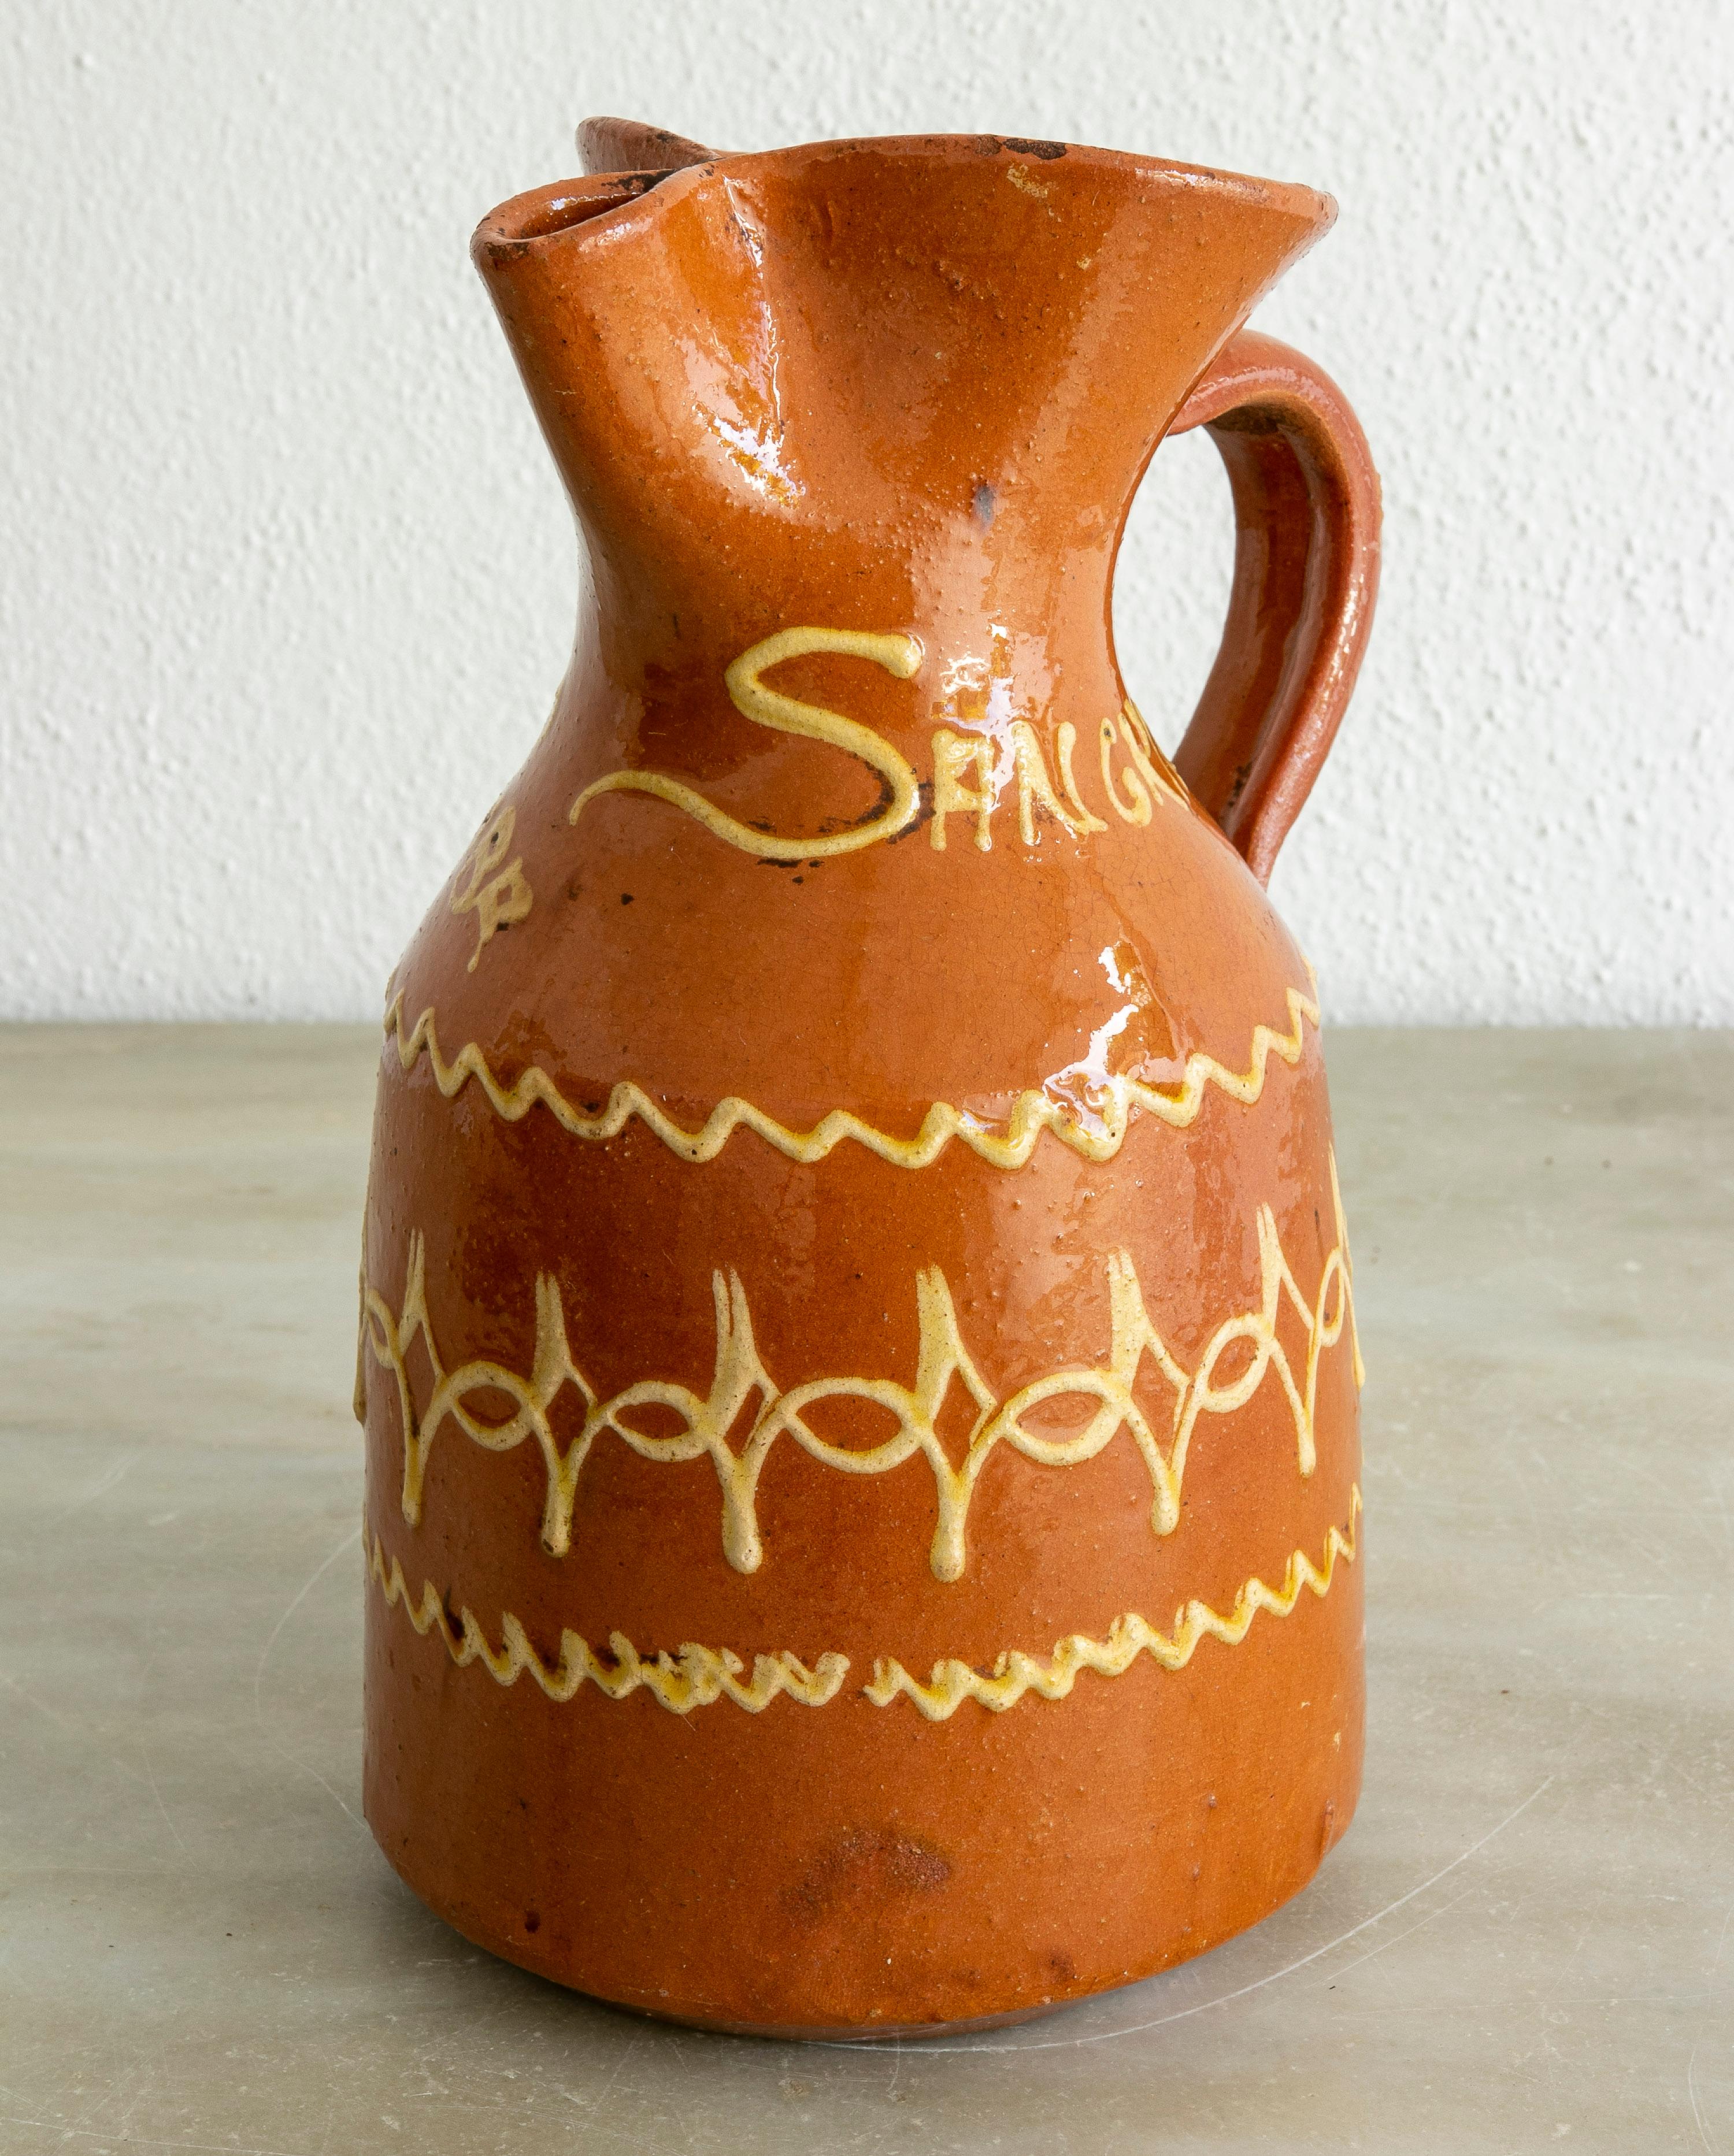 Pichet en céramique émaillée espagnol des années 1980 pour la sangria, une boisson estivale rafraîchissante faite d'un mélange de vin, de soda, de jus de citron, de fruits pelés et coupés et de beaucoup de glace. 

Il est écrit 